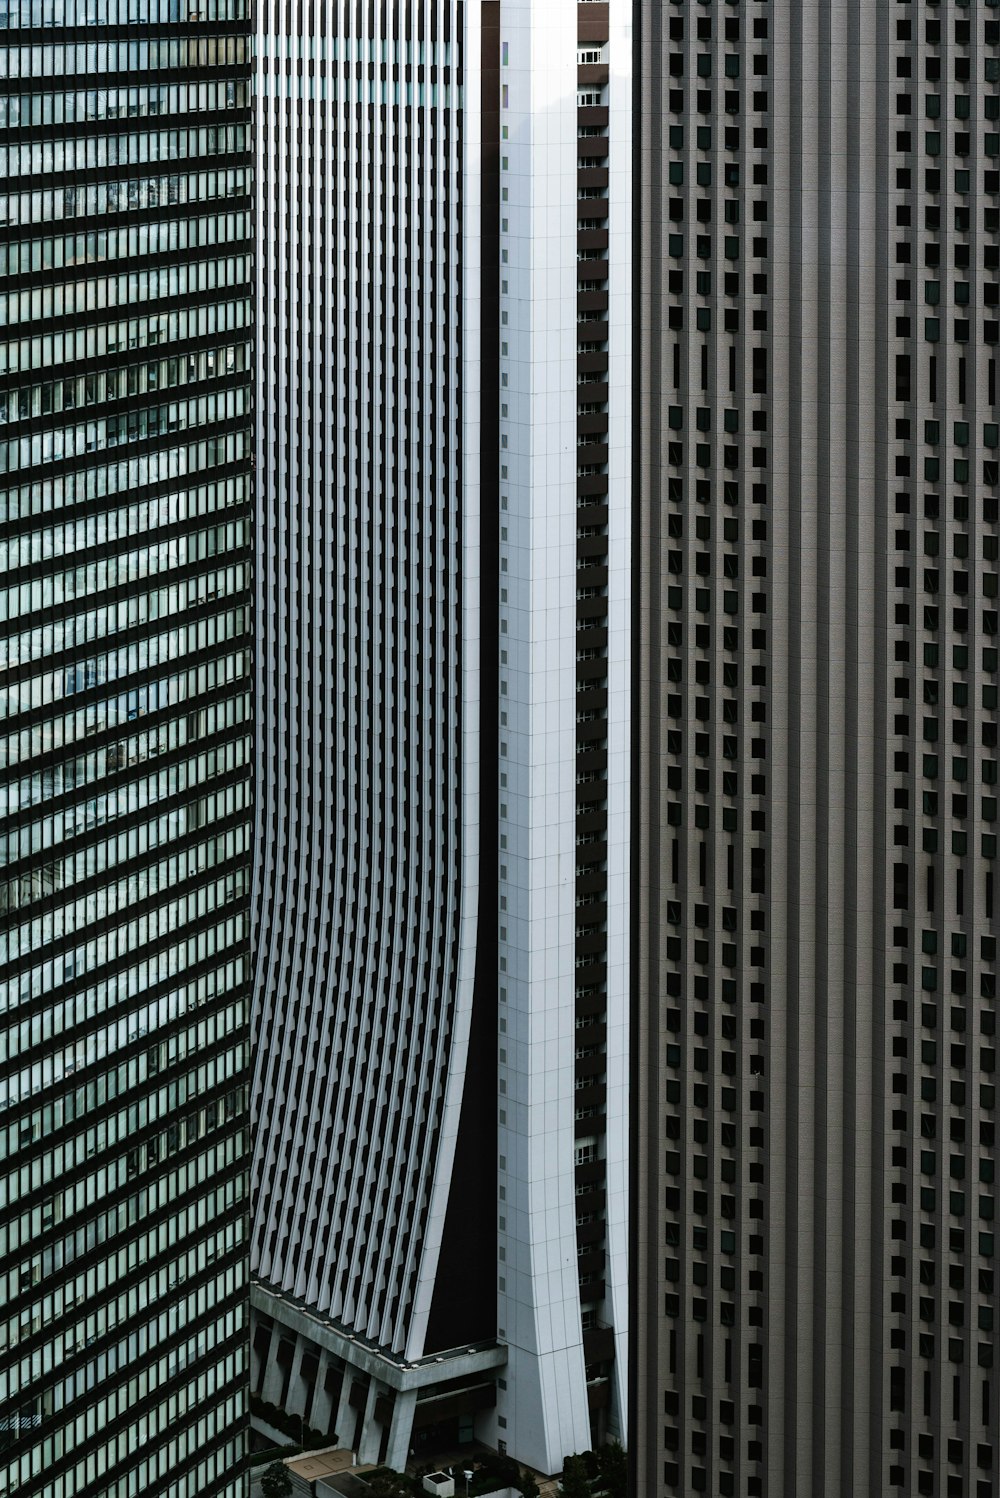 Rascacielos grises, blancos y marrones